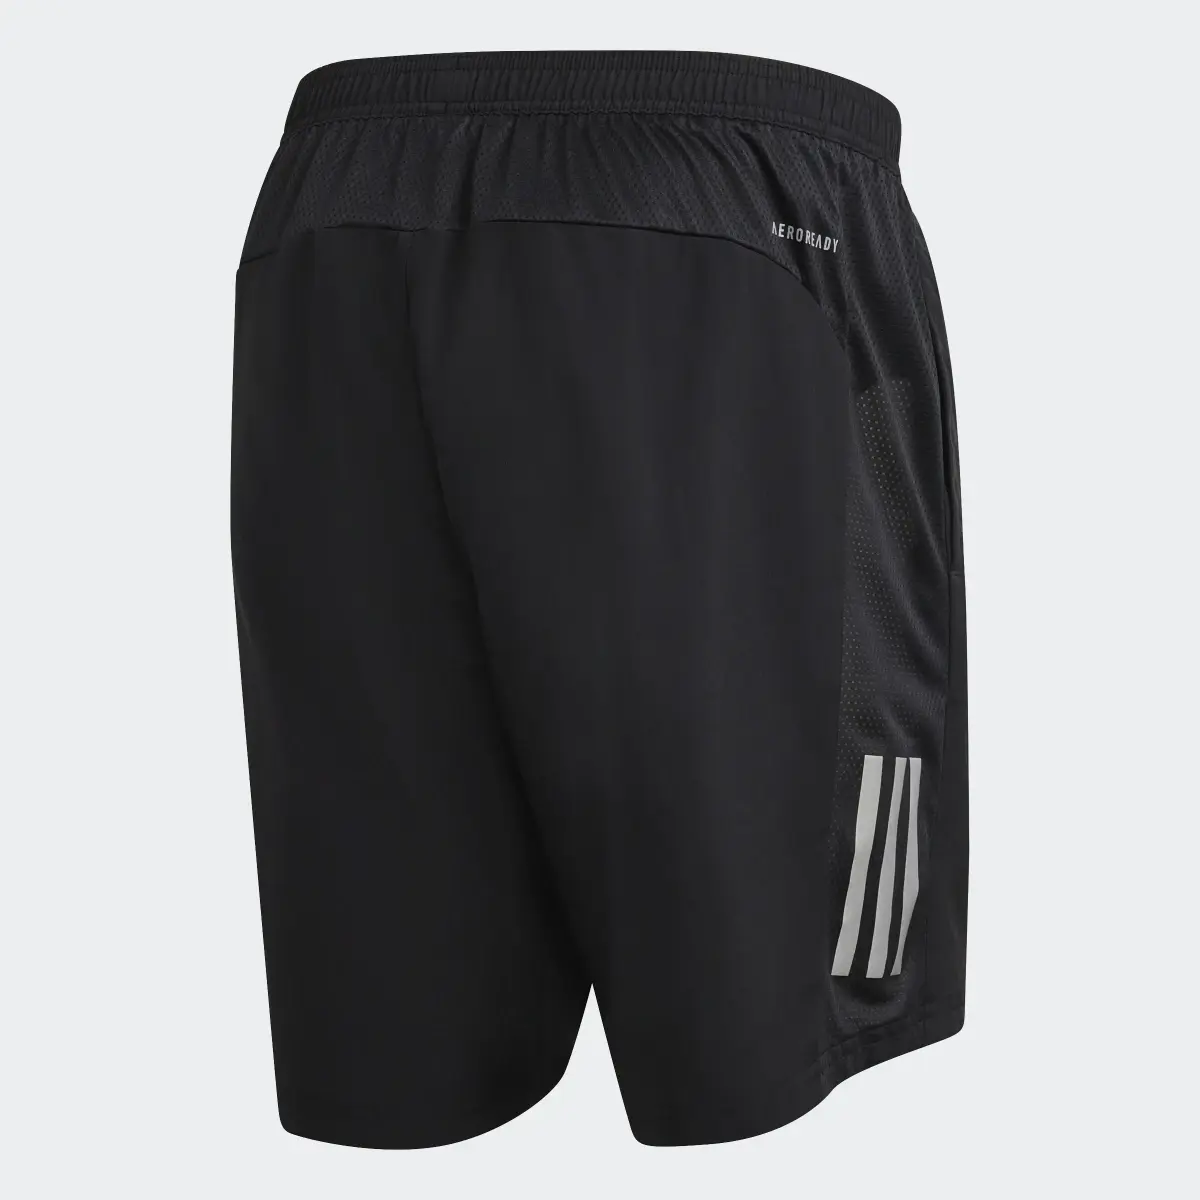 Adidas Own the Run Shorts. 2